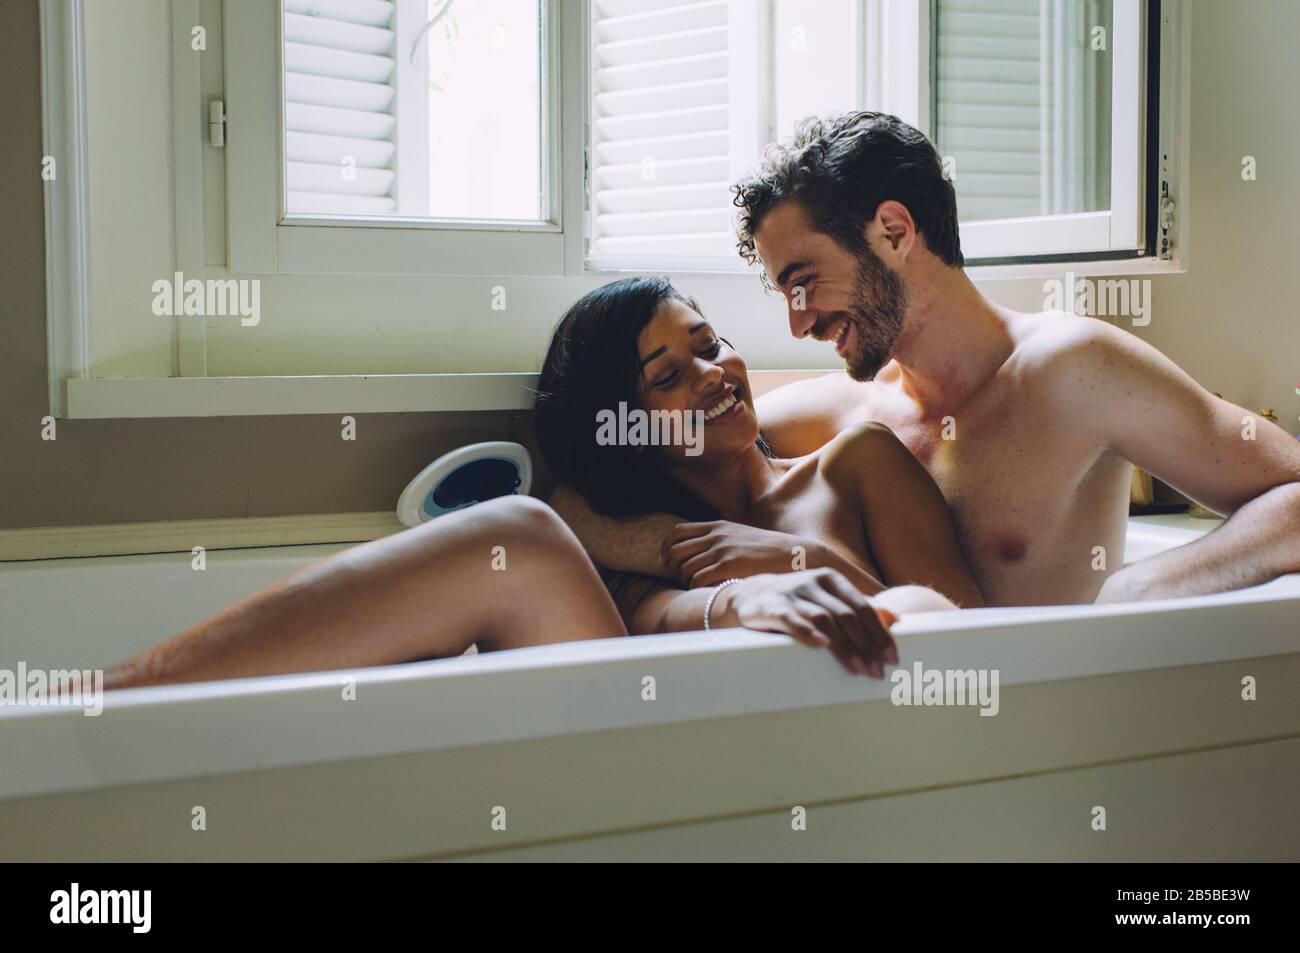 Couple prenant la baignoire dans une baignoire. Concept sur les couples et l 'amour Photo Stock - Alamy